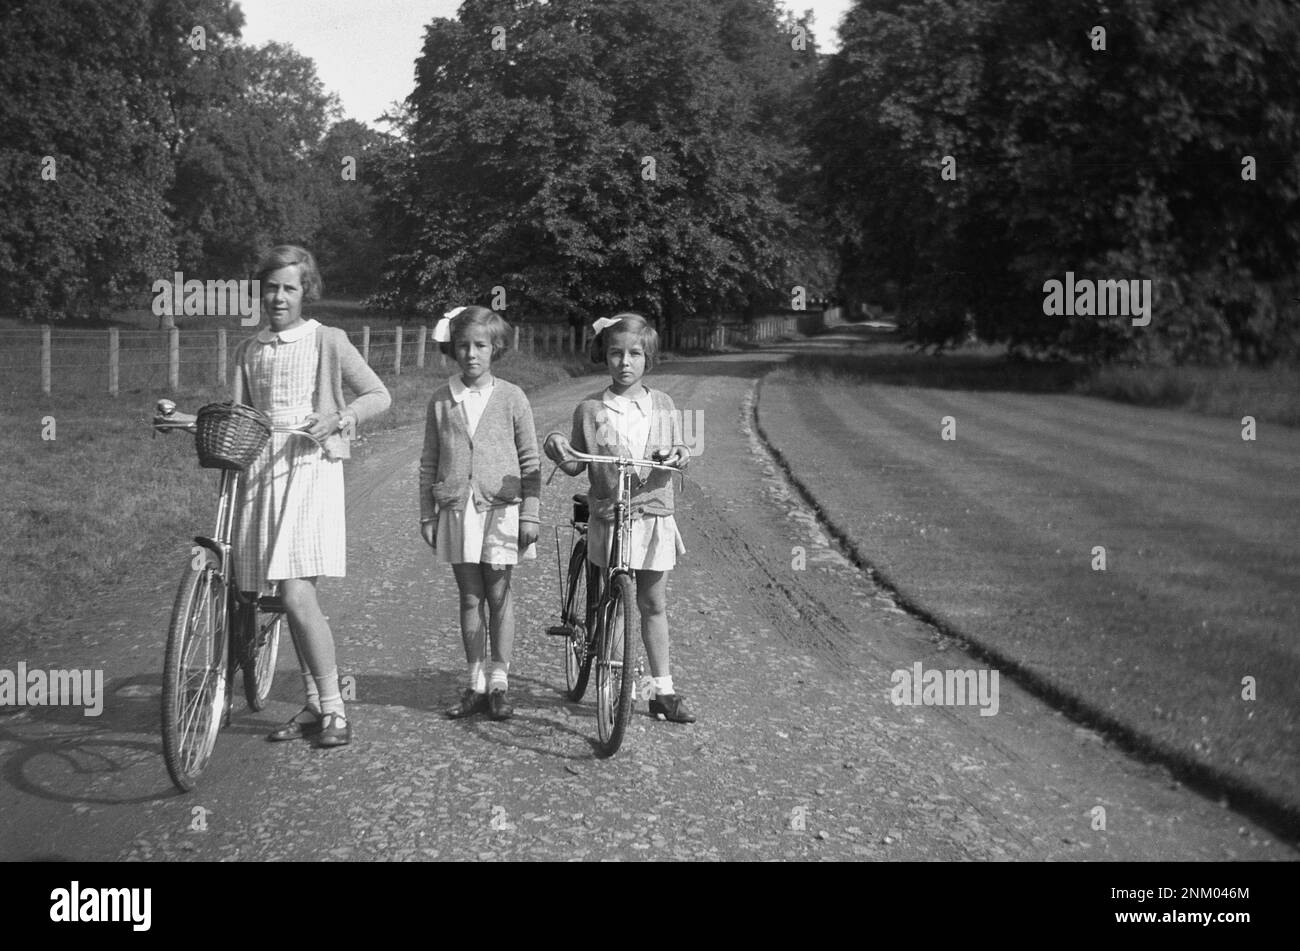 1934, historisch, nach Hause von der Schule, drei junge Schulmädchen, zwei mit ihren Fahrrädern, draußen auf einem Schotterweg eines Landbesitzes, England, Großbritannien. Stockfoto